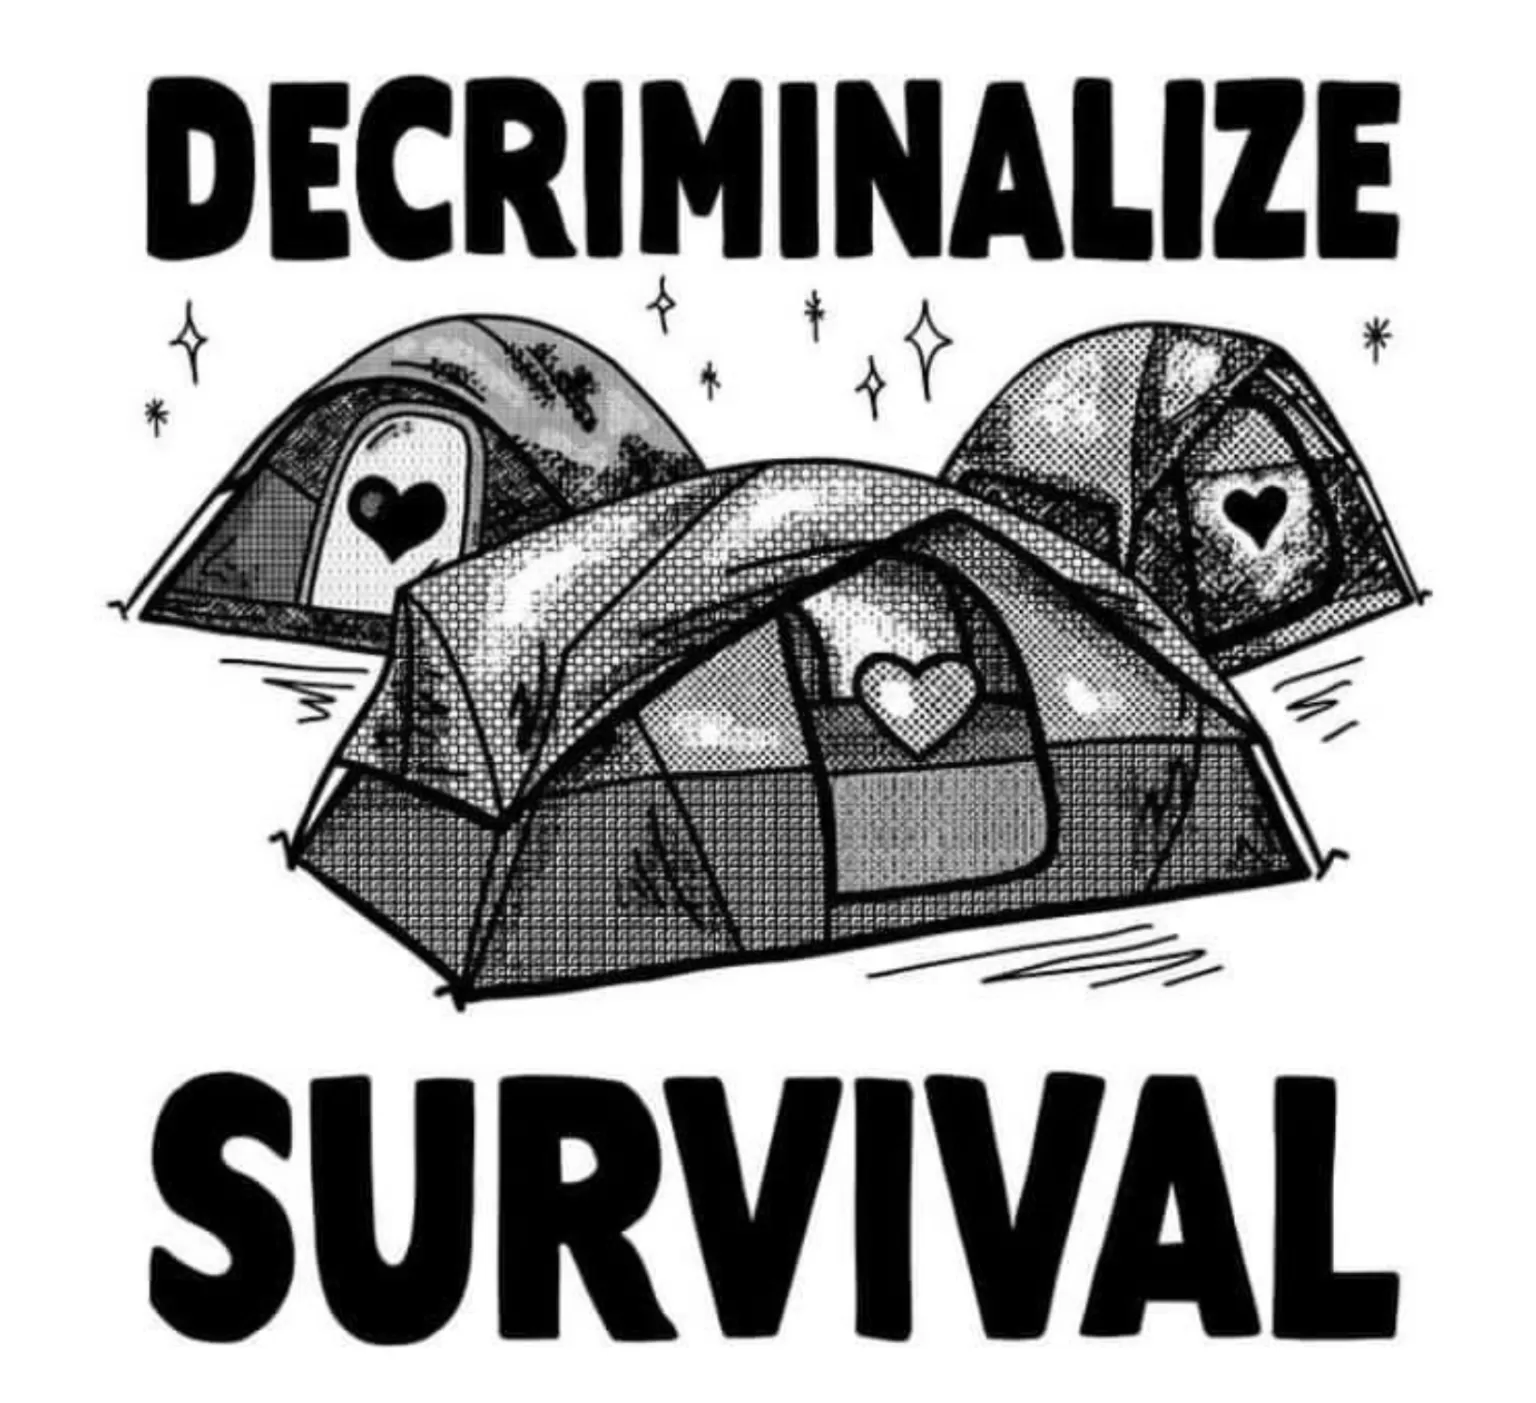 Decriminalise Survival image